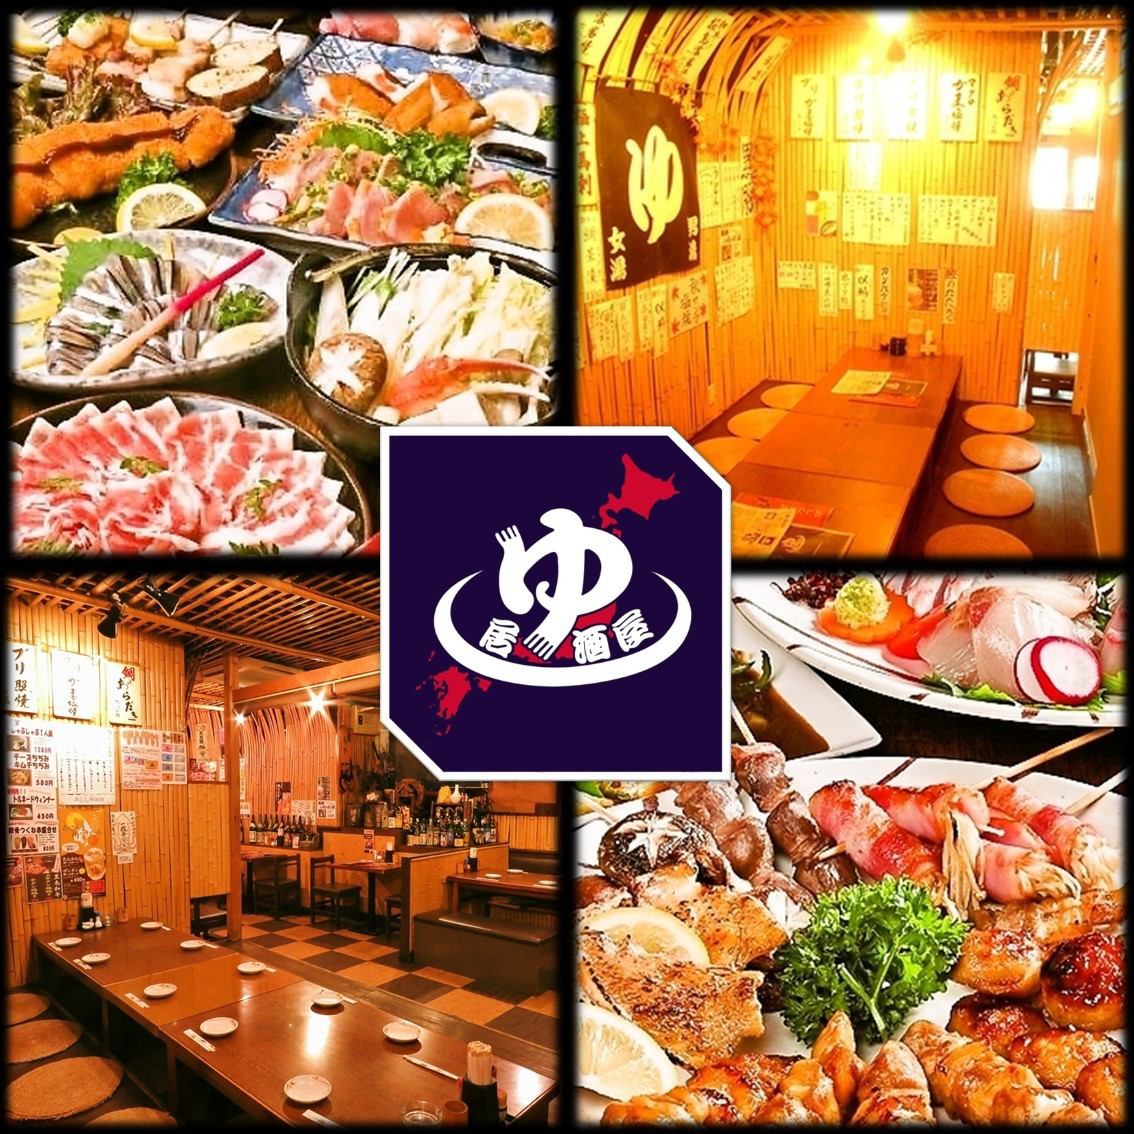 受欢迎的烤鸡肉串和很多地方美食♪有200多种菜单!! [饮酒]宴会套餐2500日元〜